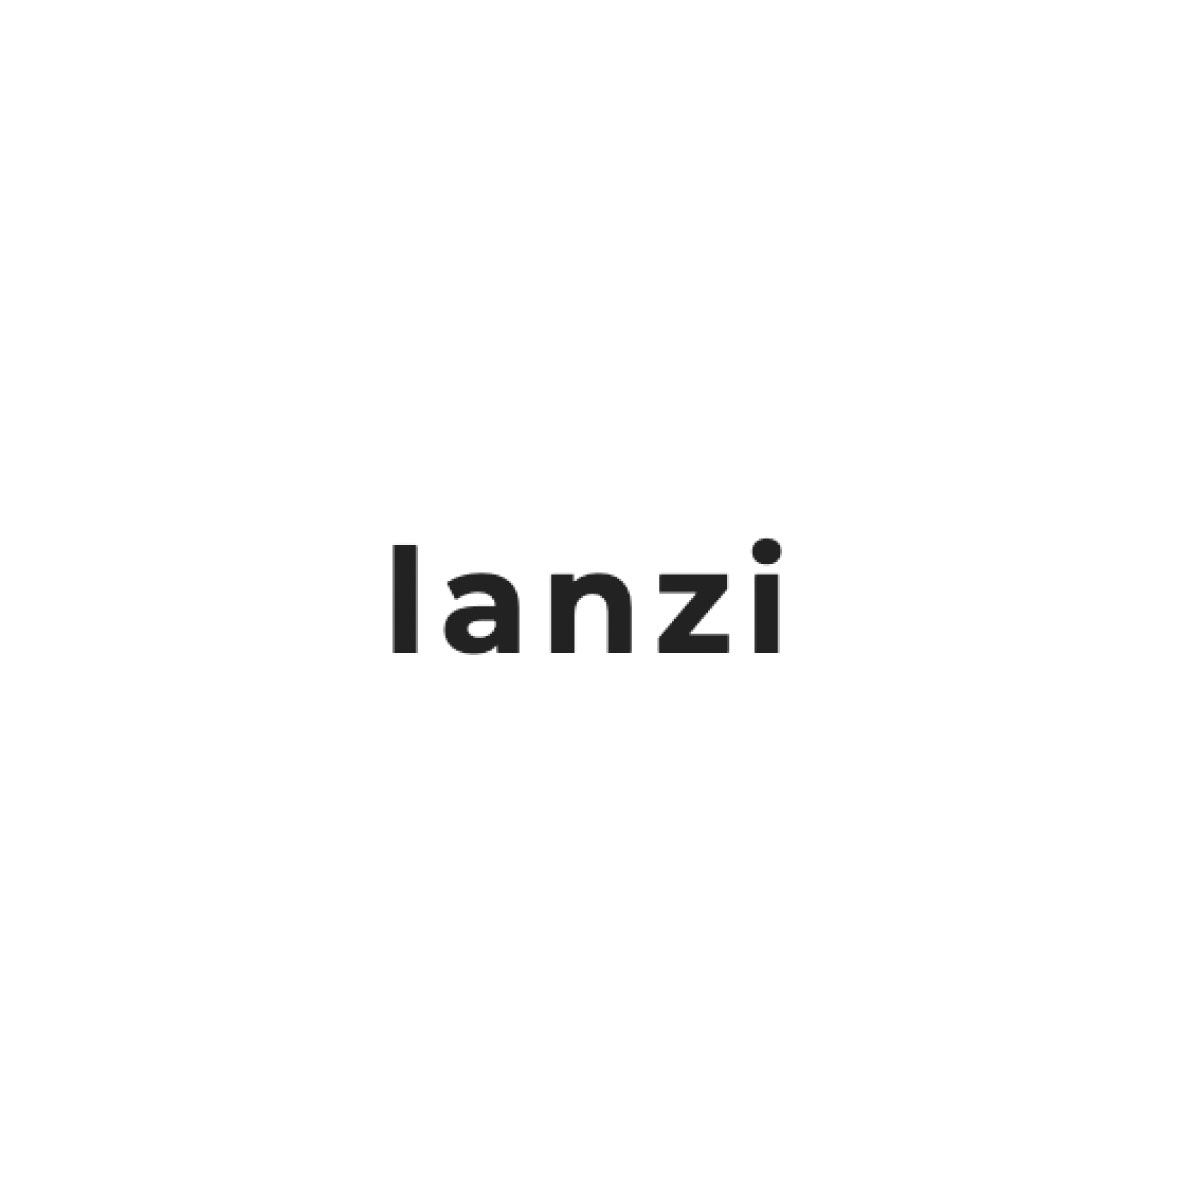 Lanzi